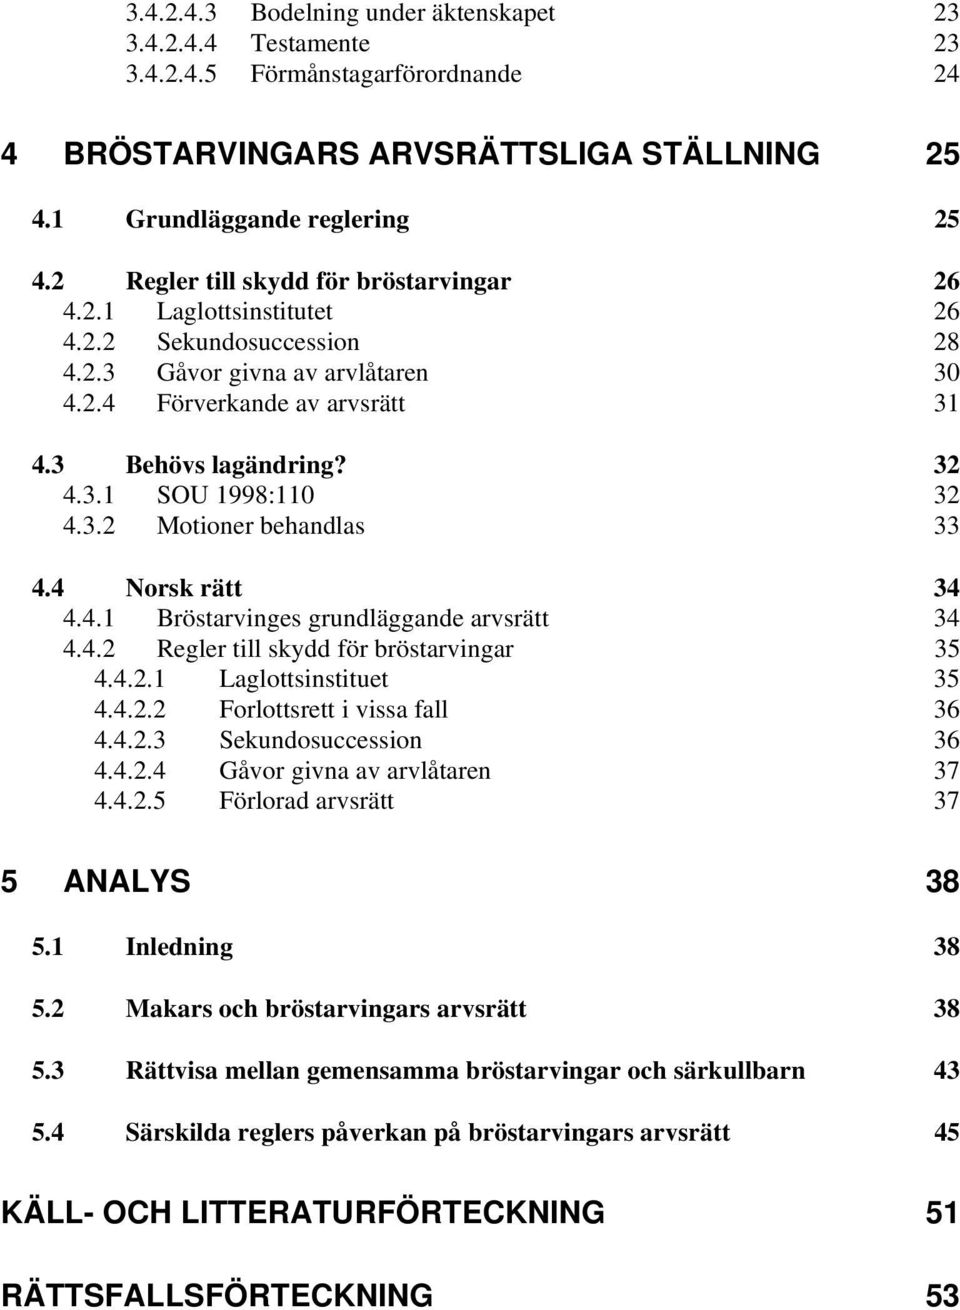 3.2 Motioner behandlas 33 4.4 Norsk rätt 34 4.4.1 Bröstarvinges grundläggande arvsrätt 34 4.4.2 Regler till skydd för bröstarvingar 35 4.4.2.1 Laglottsinstituet 35 4.4.2.2 Forlottsrett i vissa fall 36 4.